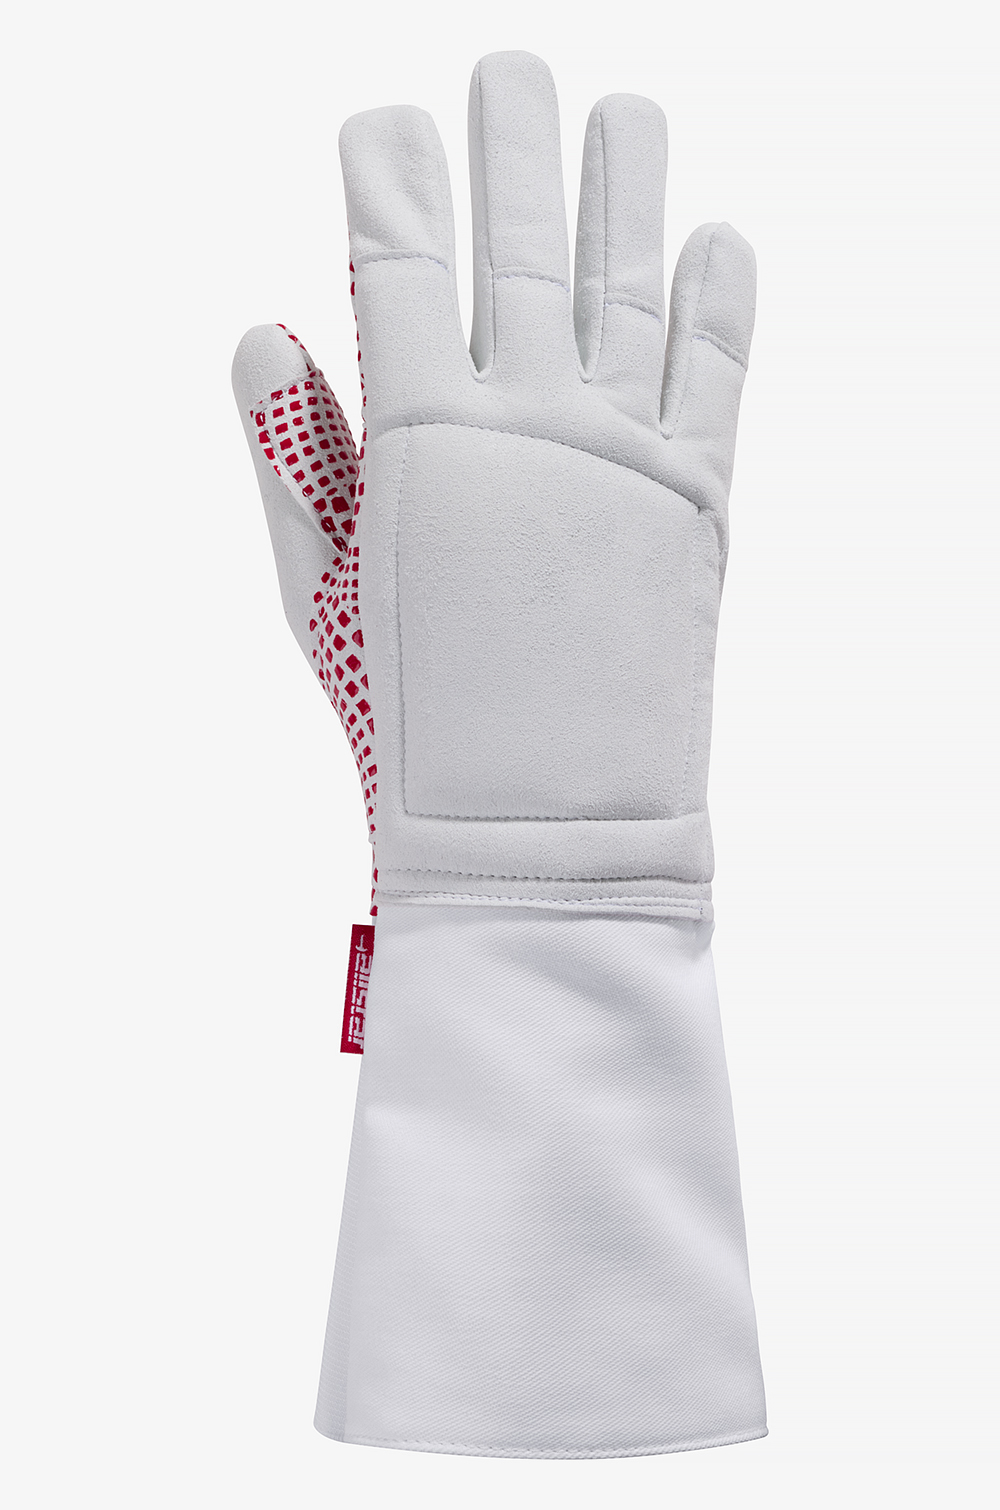 Gripstar Glove